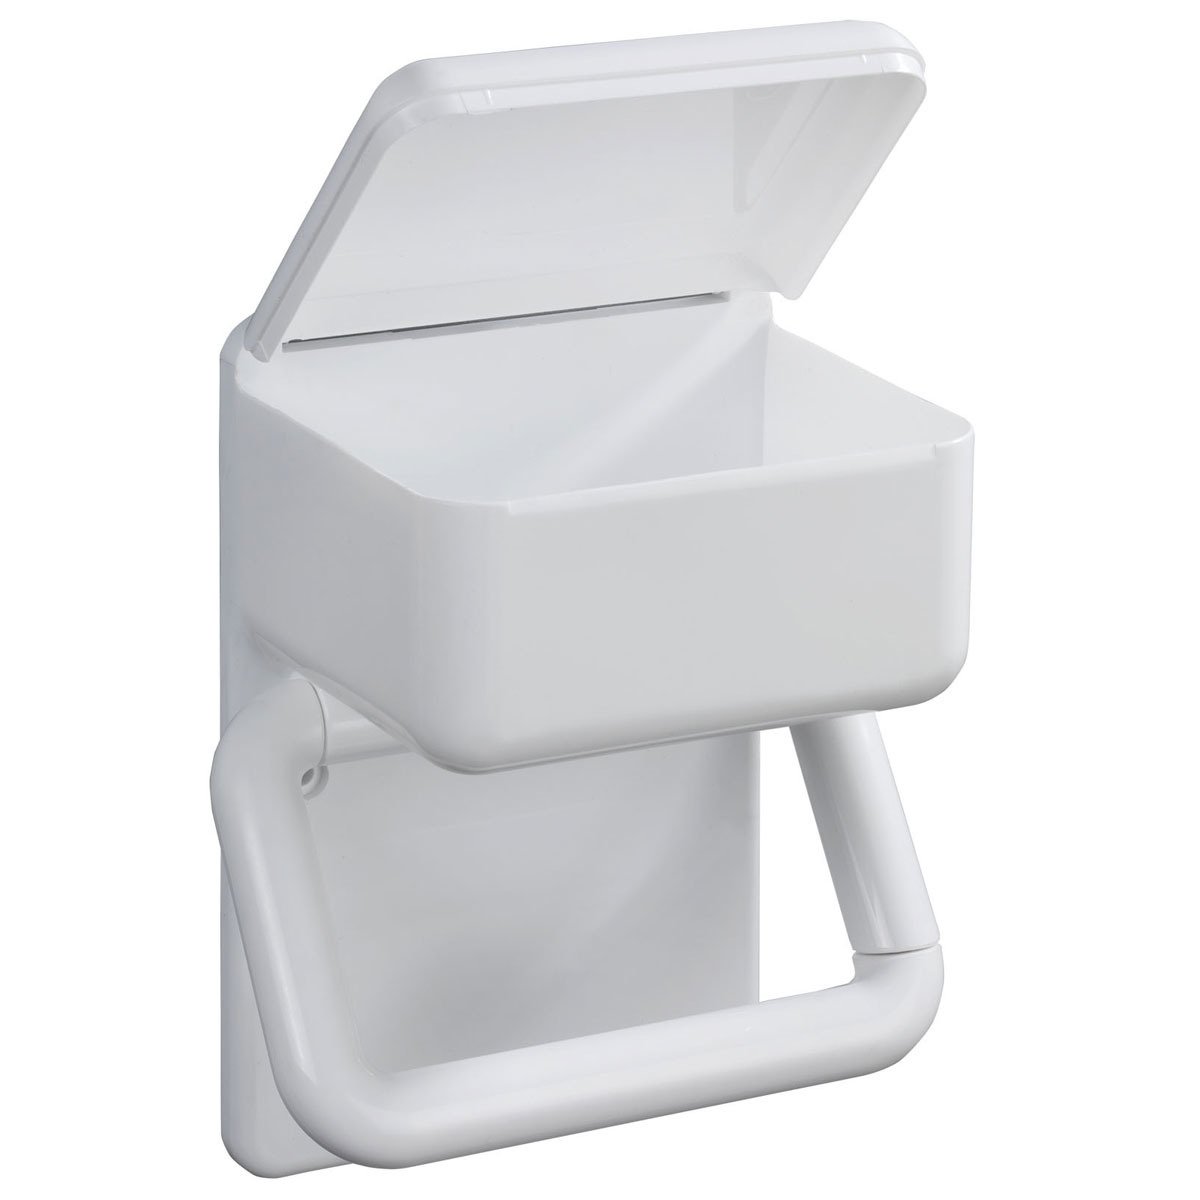 Toilettenpapierhalter 2 | kaufen 1 home24 in